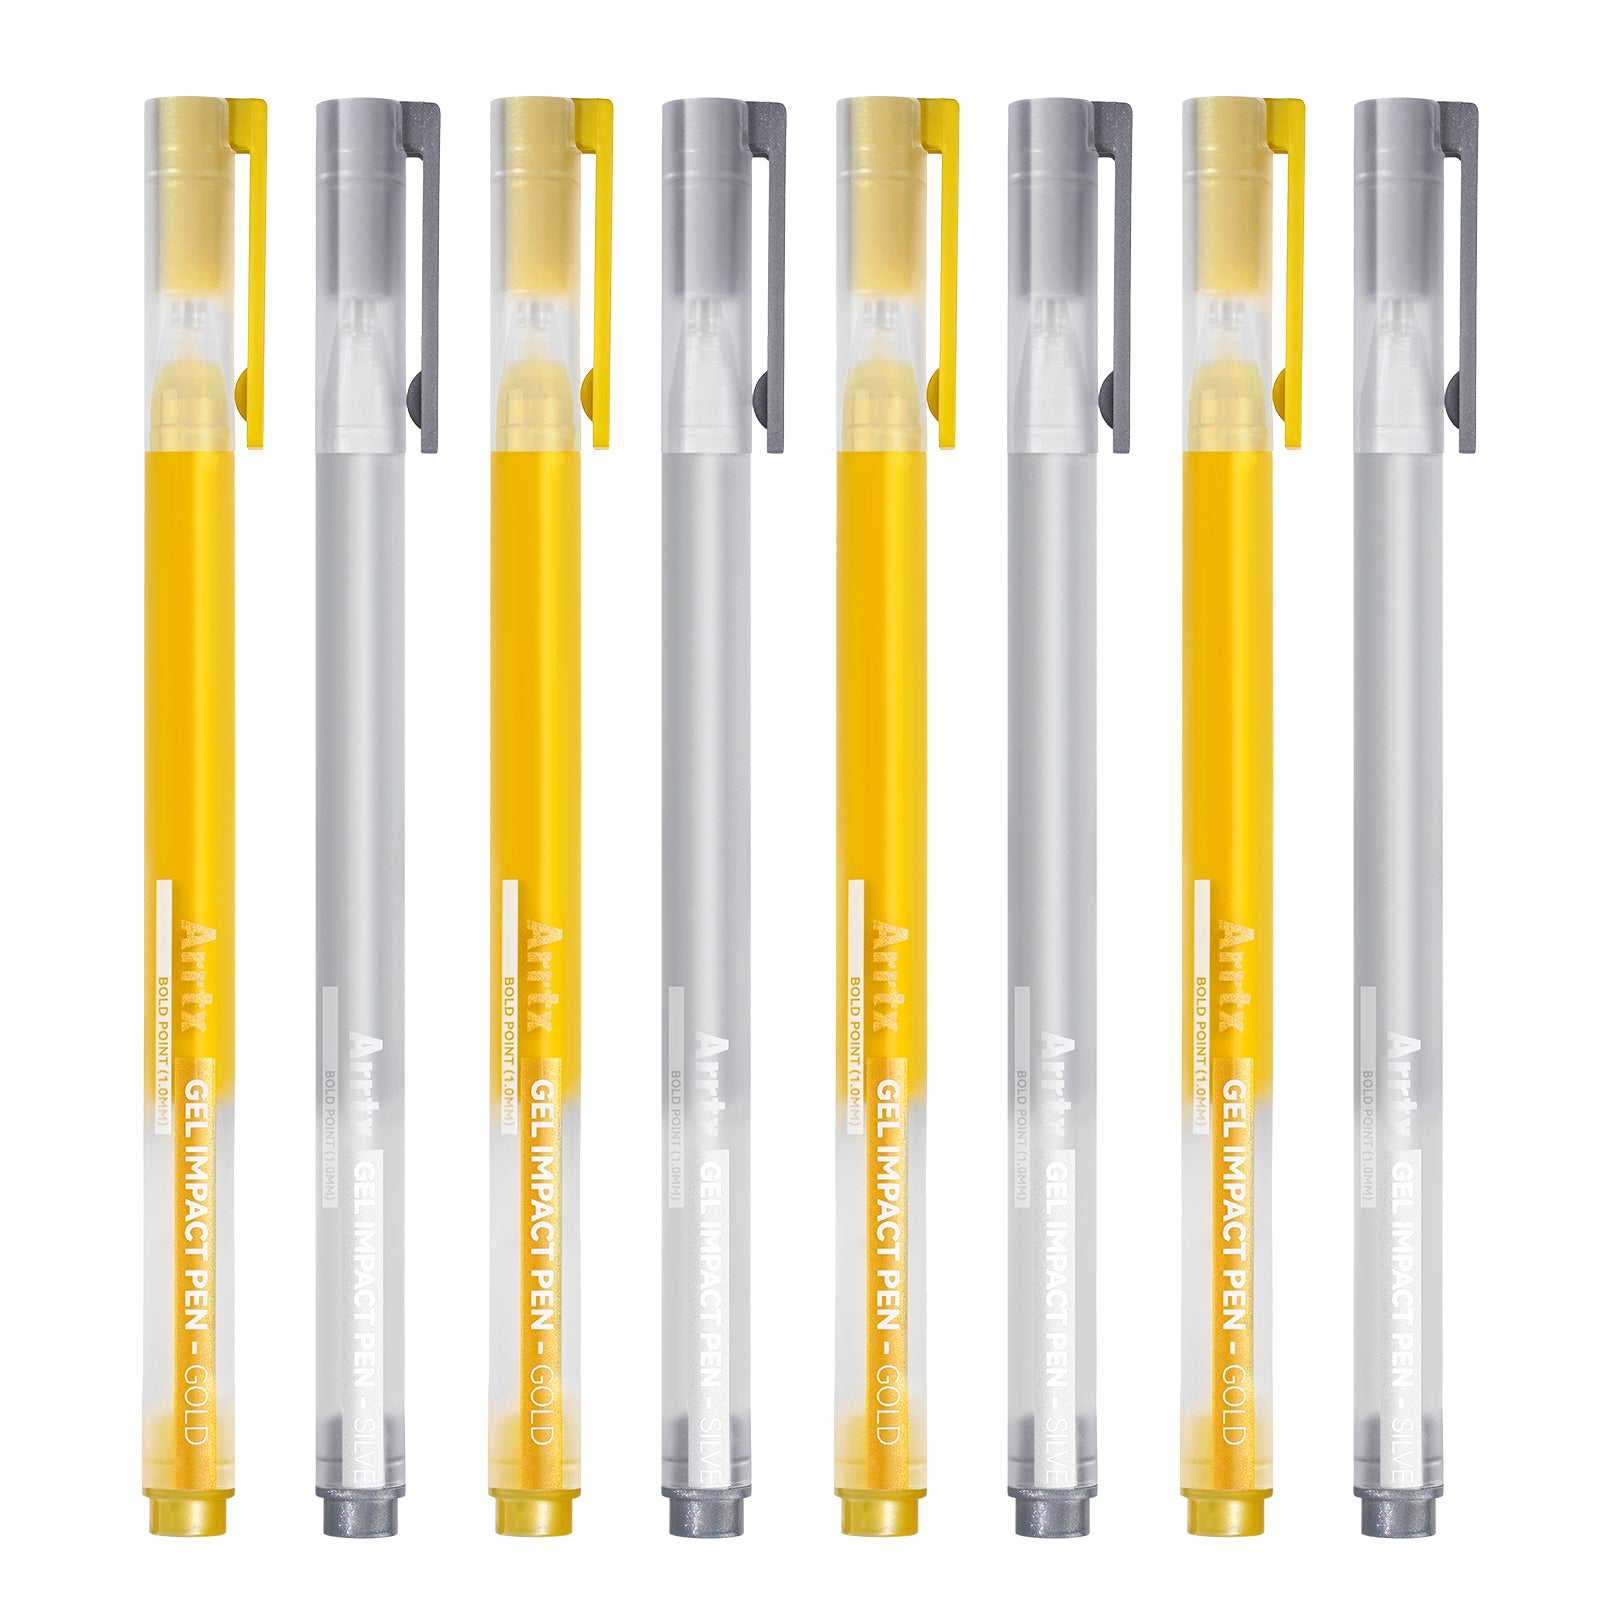 Arrtx Gelstifte in Gold- und Silberfarben, 8 Stück, große Kapazität, weiße Tintenstifte